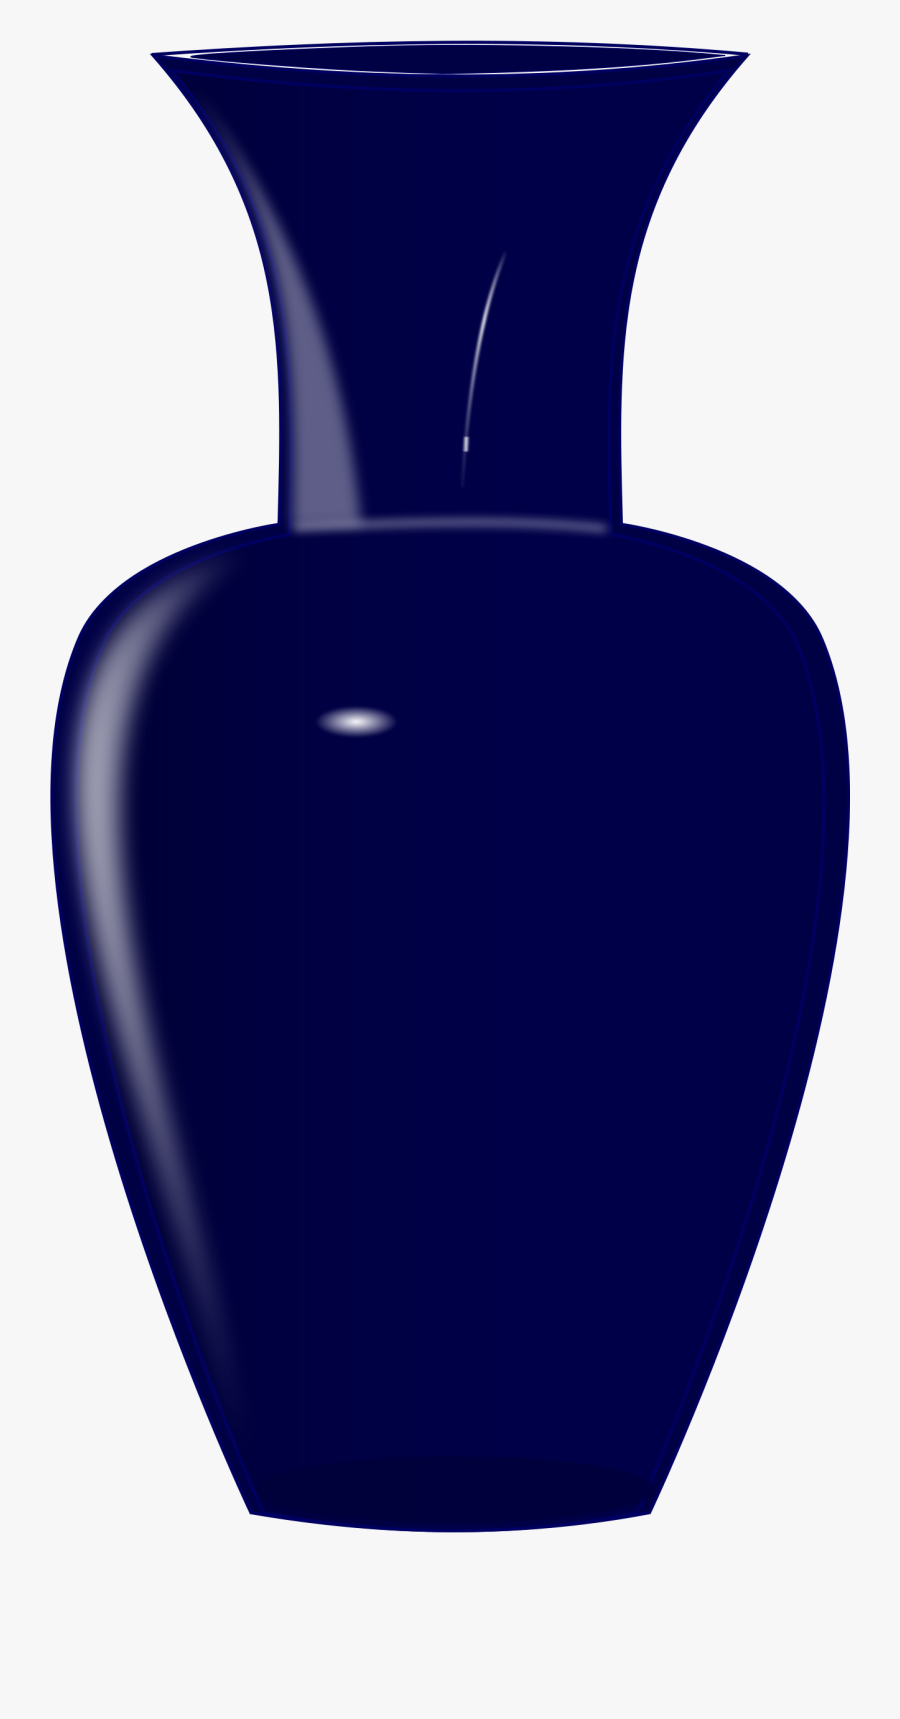 Blue Glass Vase - Vase Clipart, Transparent Clipart